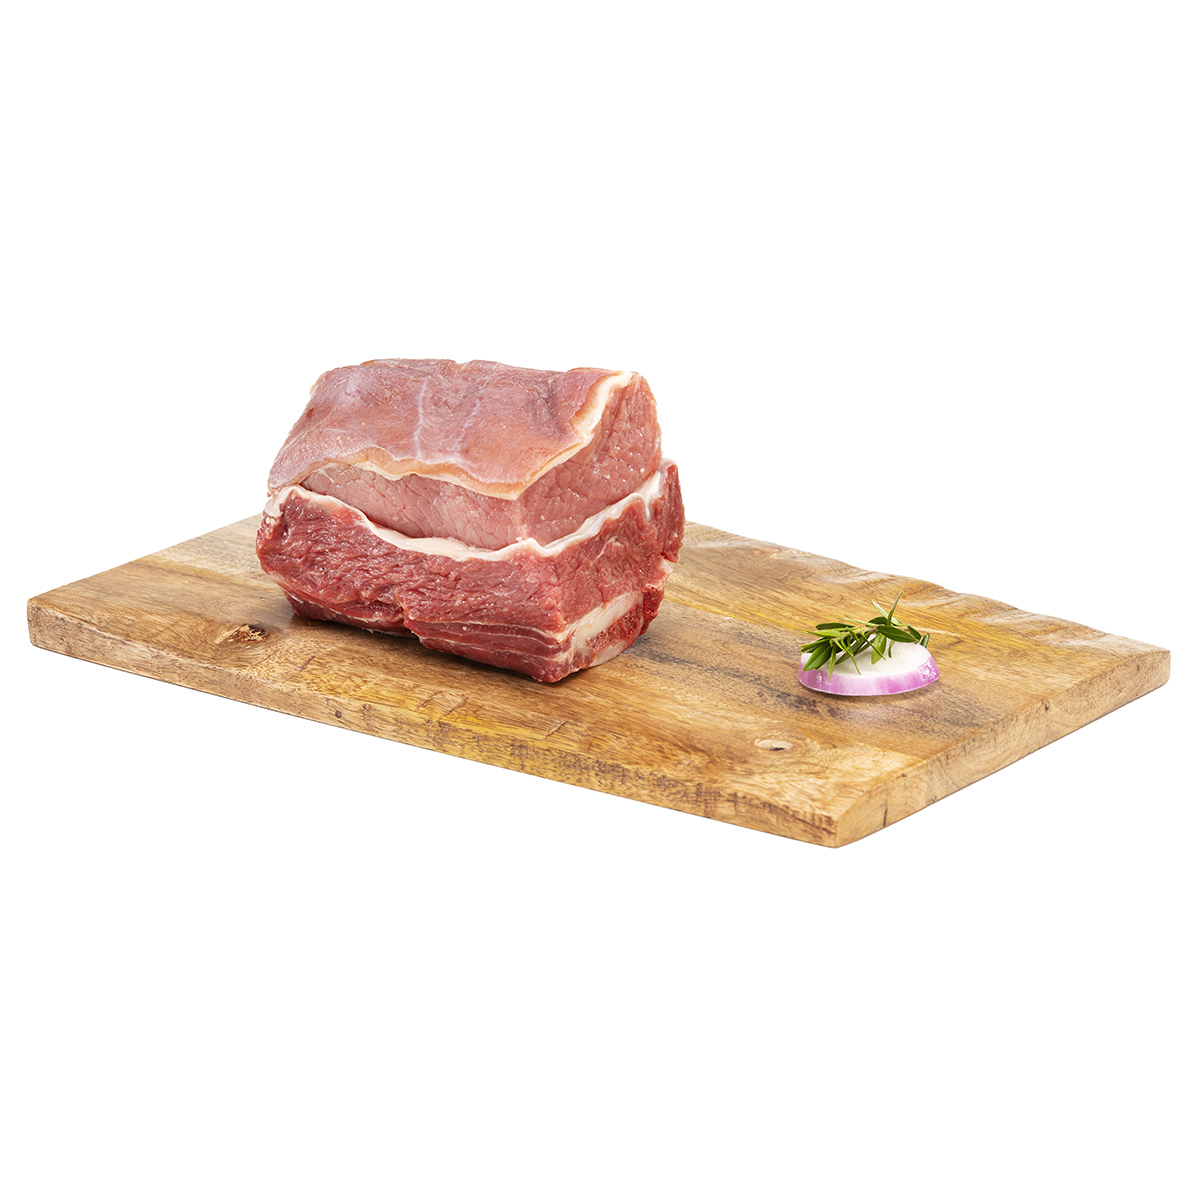 Biancostato bovino di carne italiana prima qualità vendita online